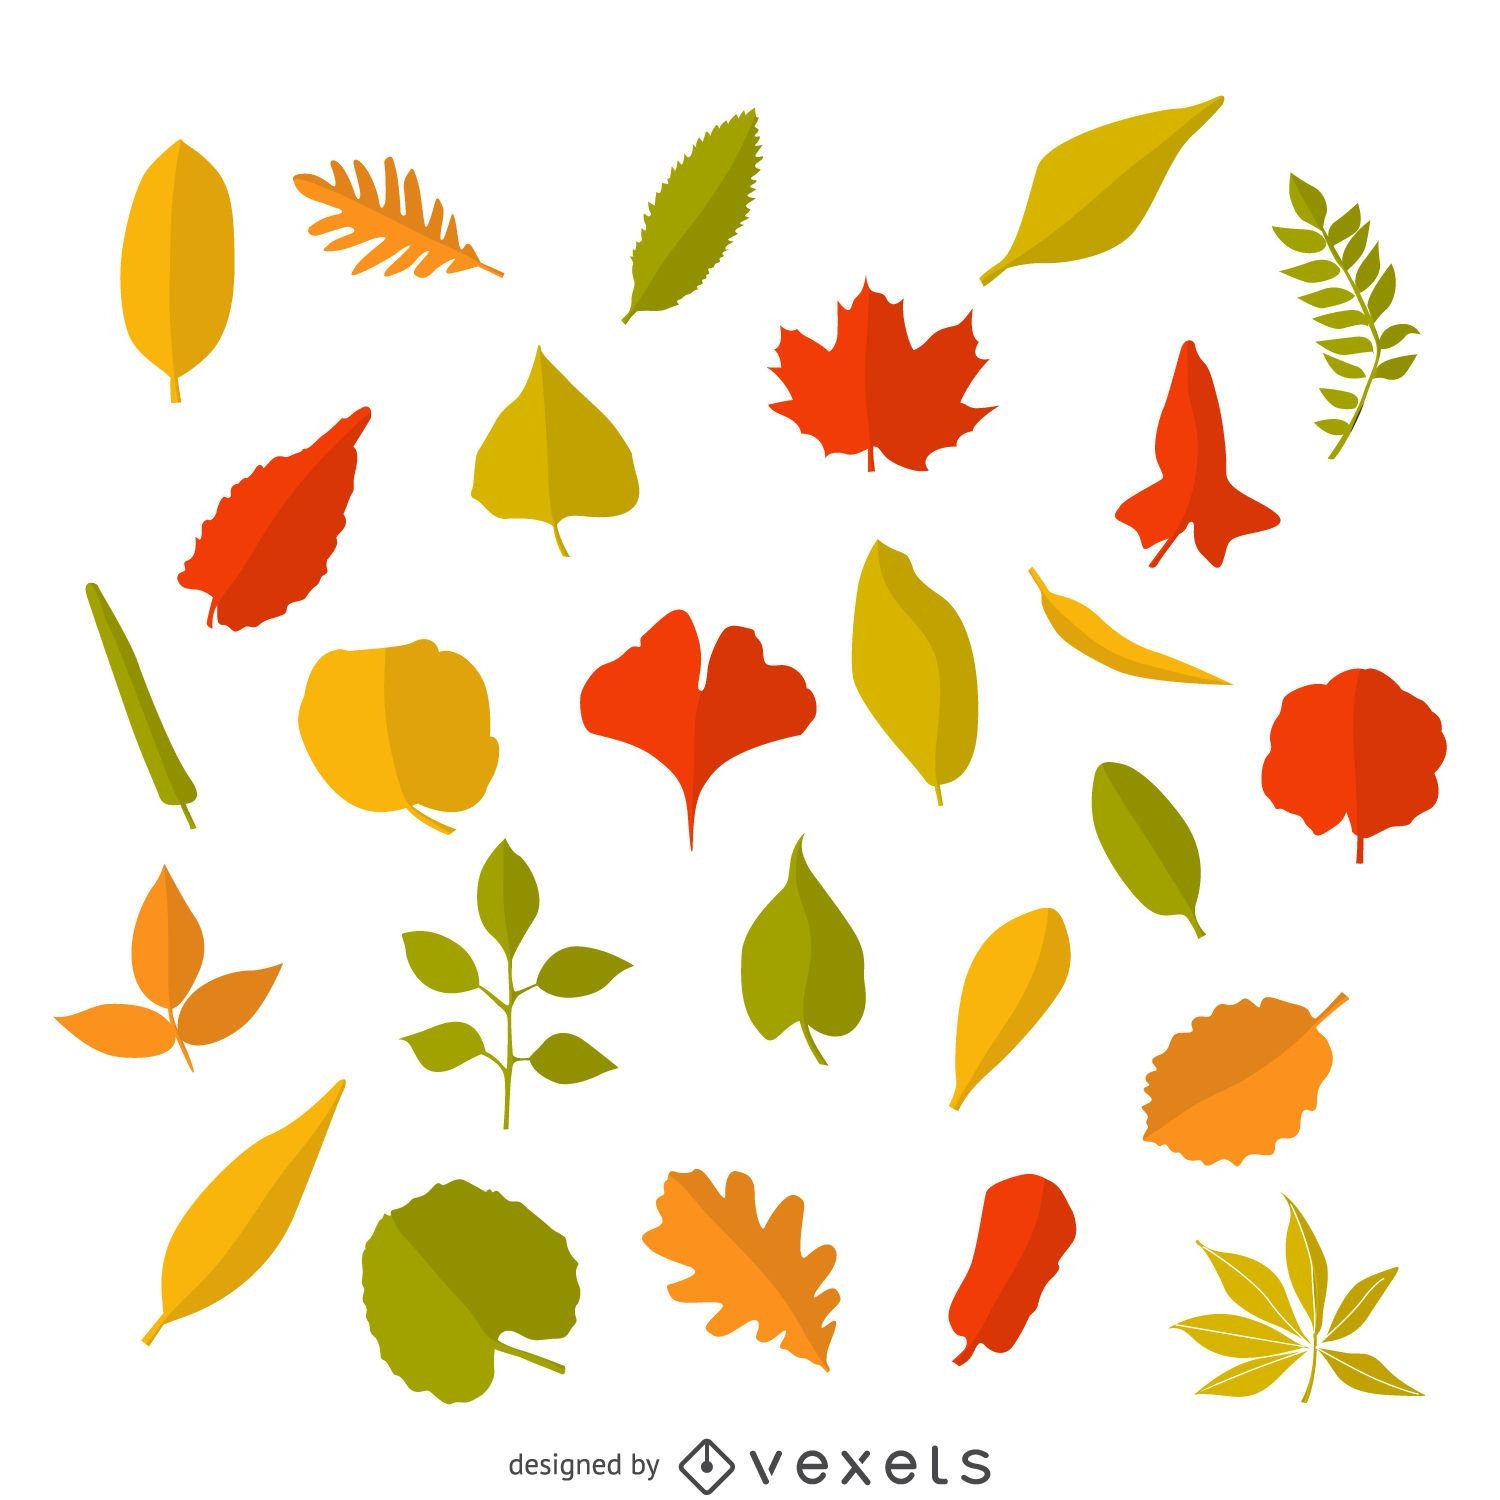 Ilustración de hojas de otoño